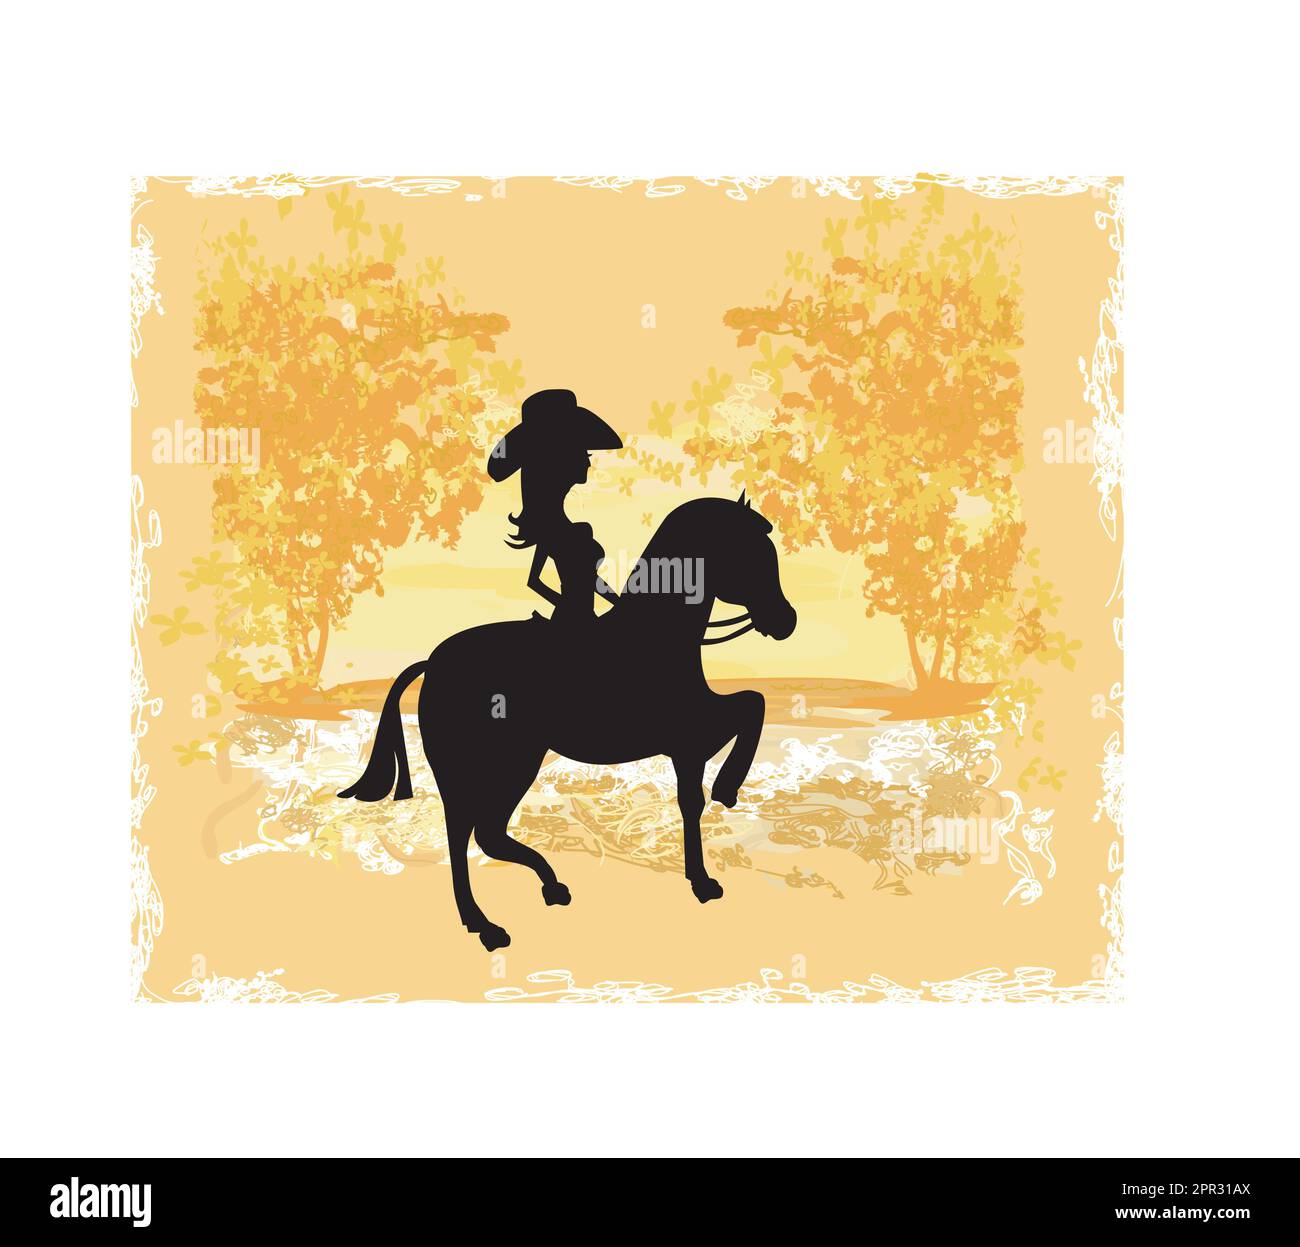 Silueta De Cowgirl Y Caballo Grunge Antecedentes Imagen Vector De Stock Alamy